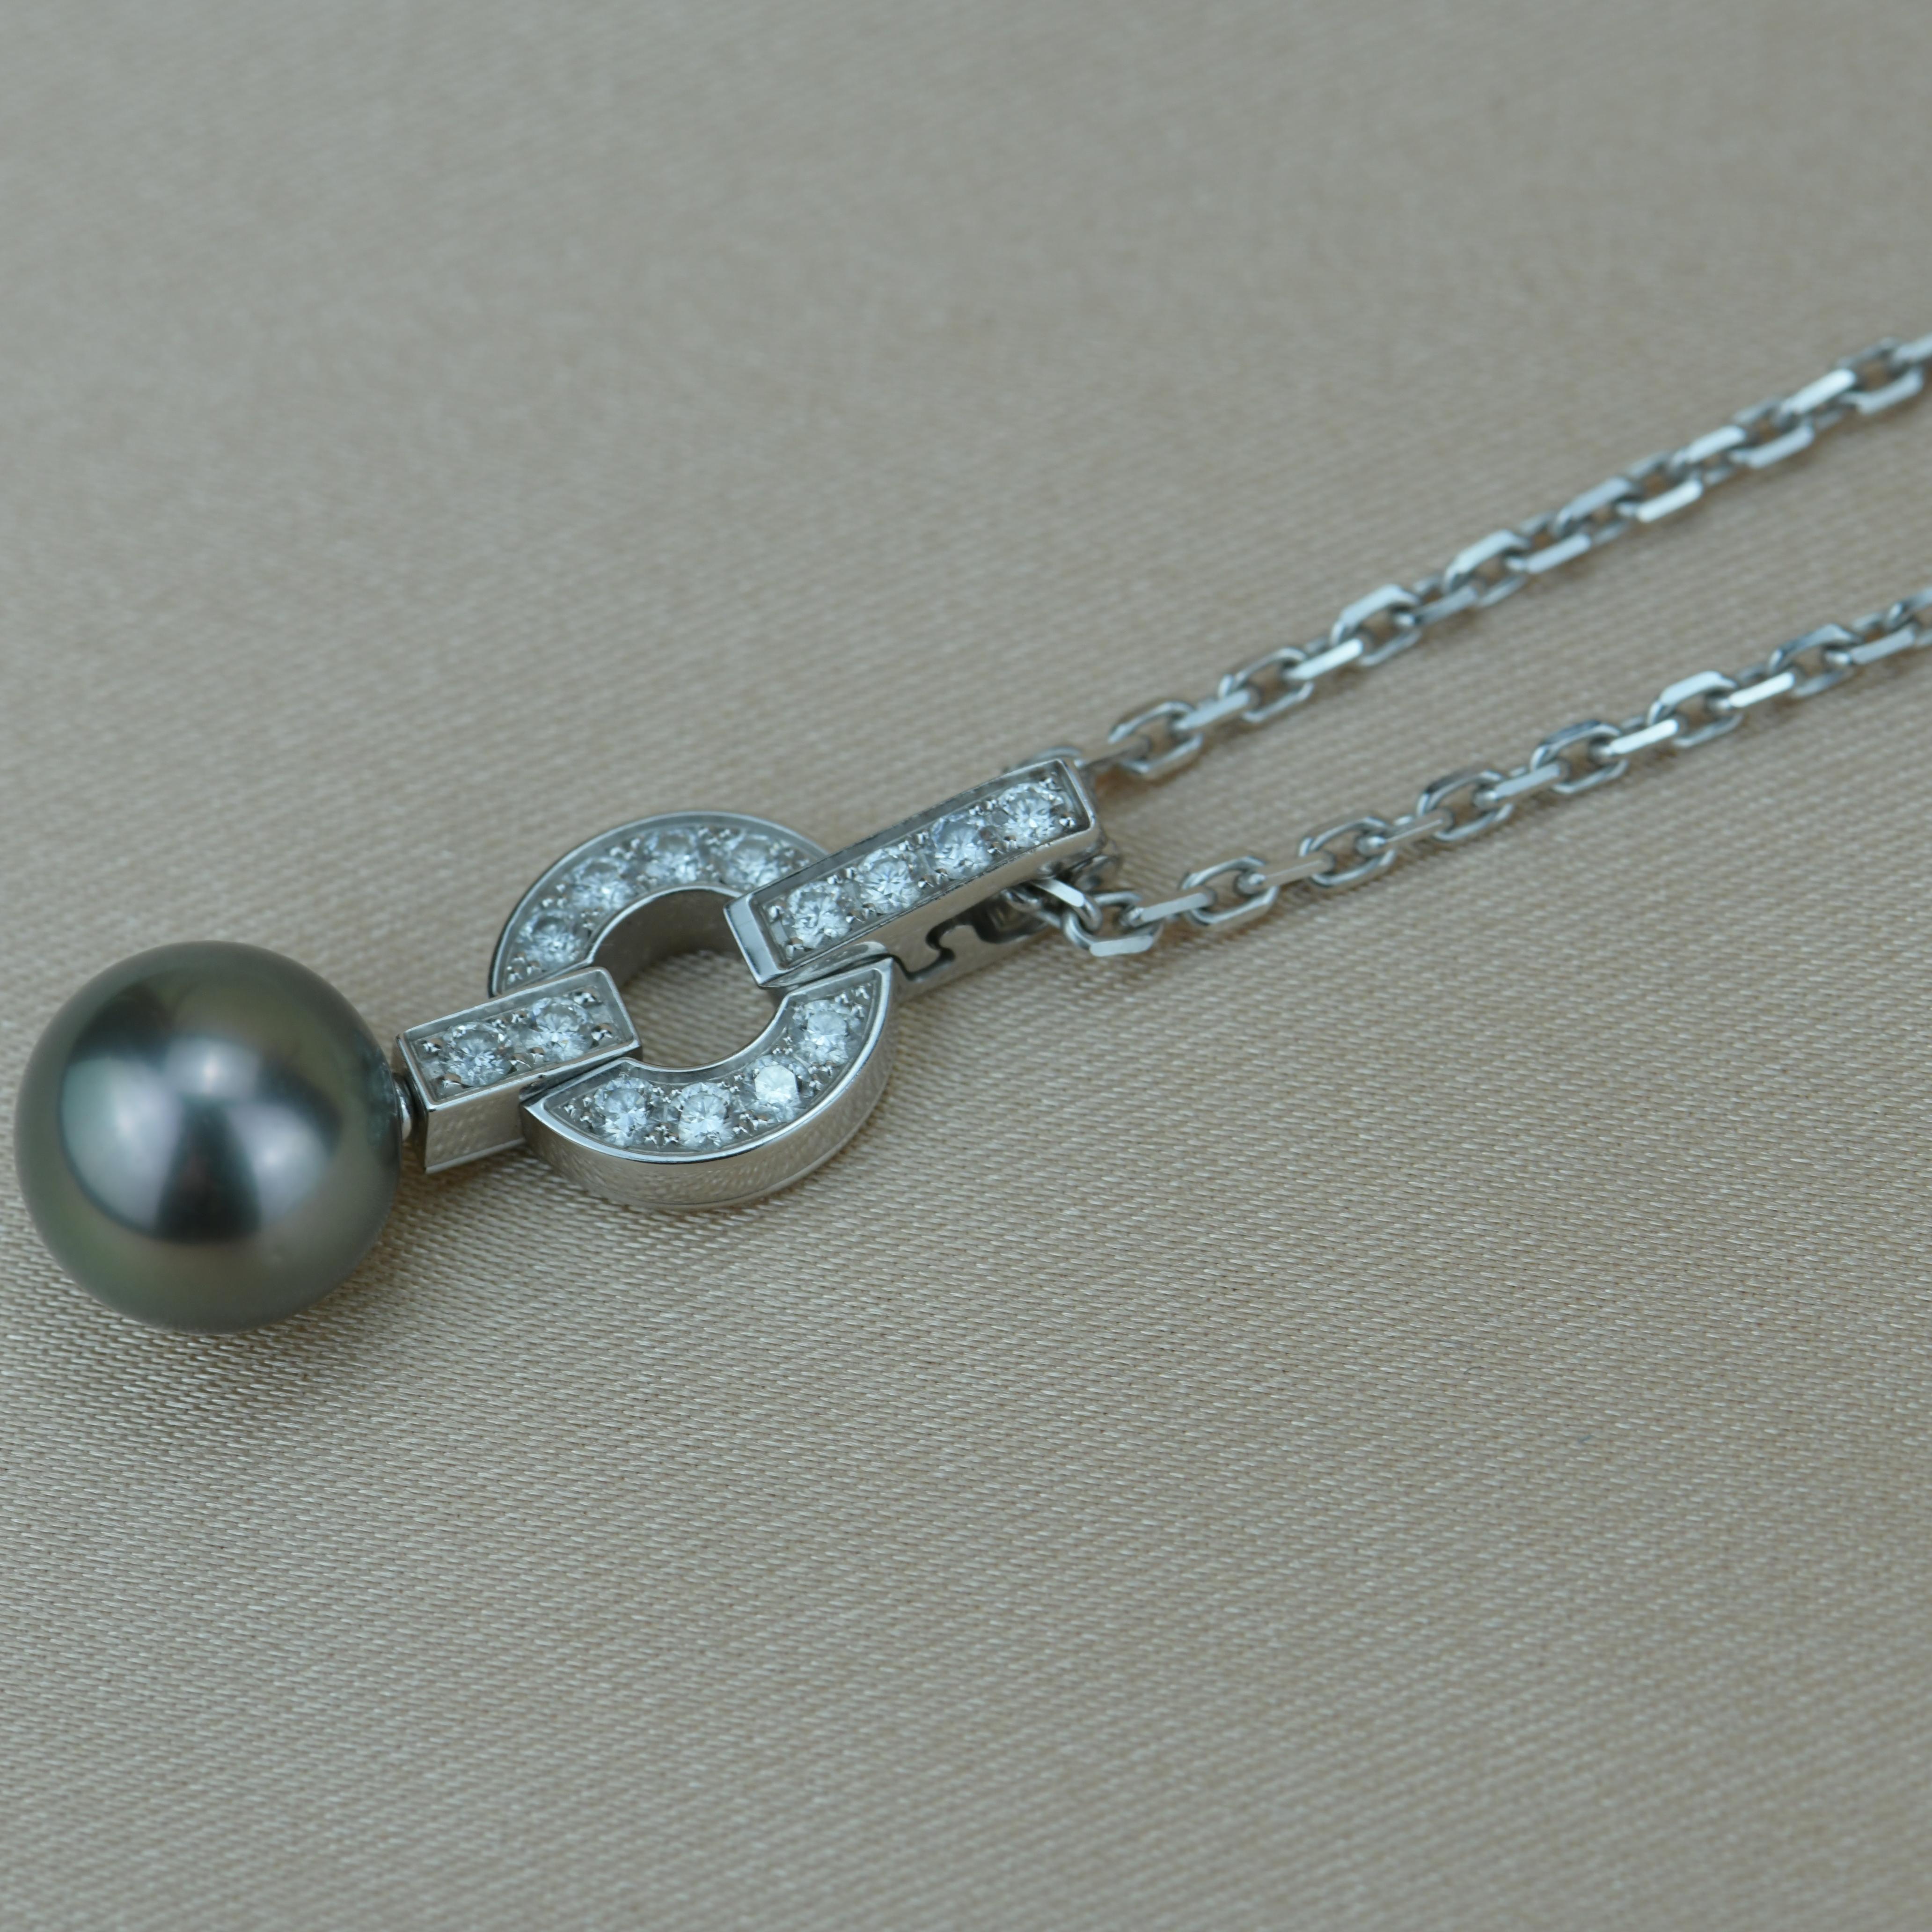 Women's Cartier Himalia Diamond & Pearl Pendant Necklace